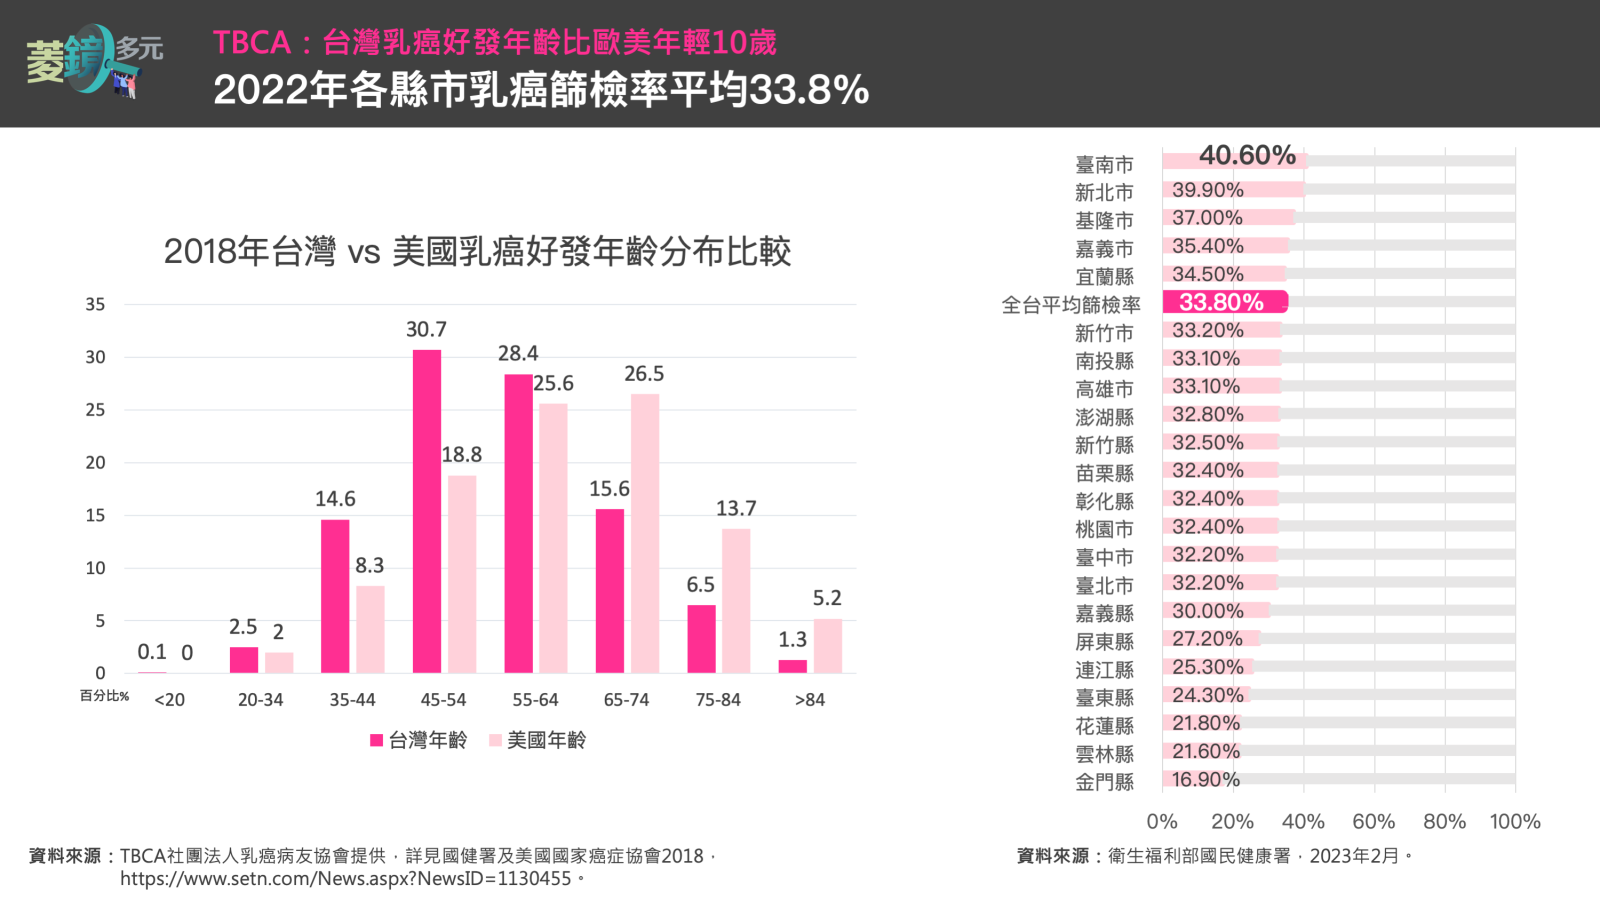 乳癌為台灣20-39歲年輕族群發生率最高之癌症，且好發年齡比歐美年輕10歲。台南市以40.6%乳癌篩檢率居全台第一，高於全台平均近7%。菱傳媒製圖